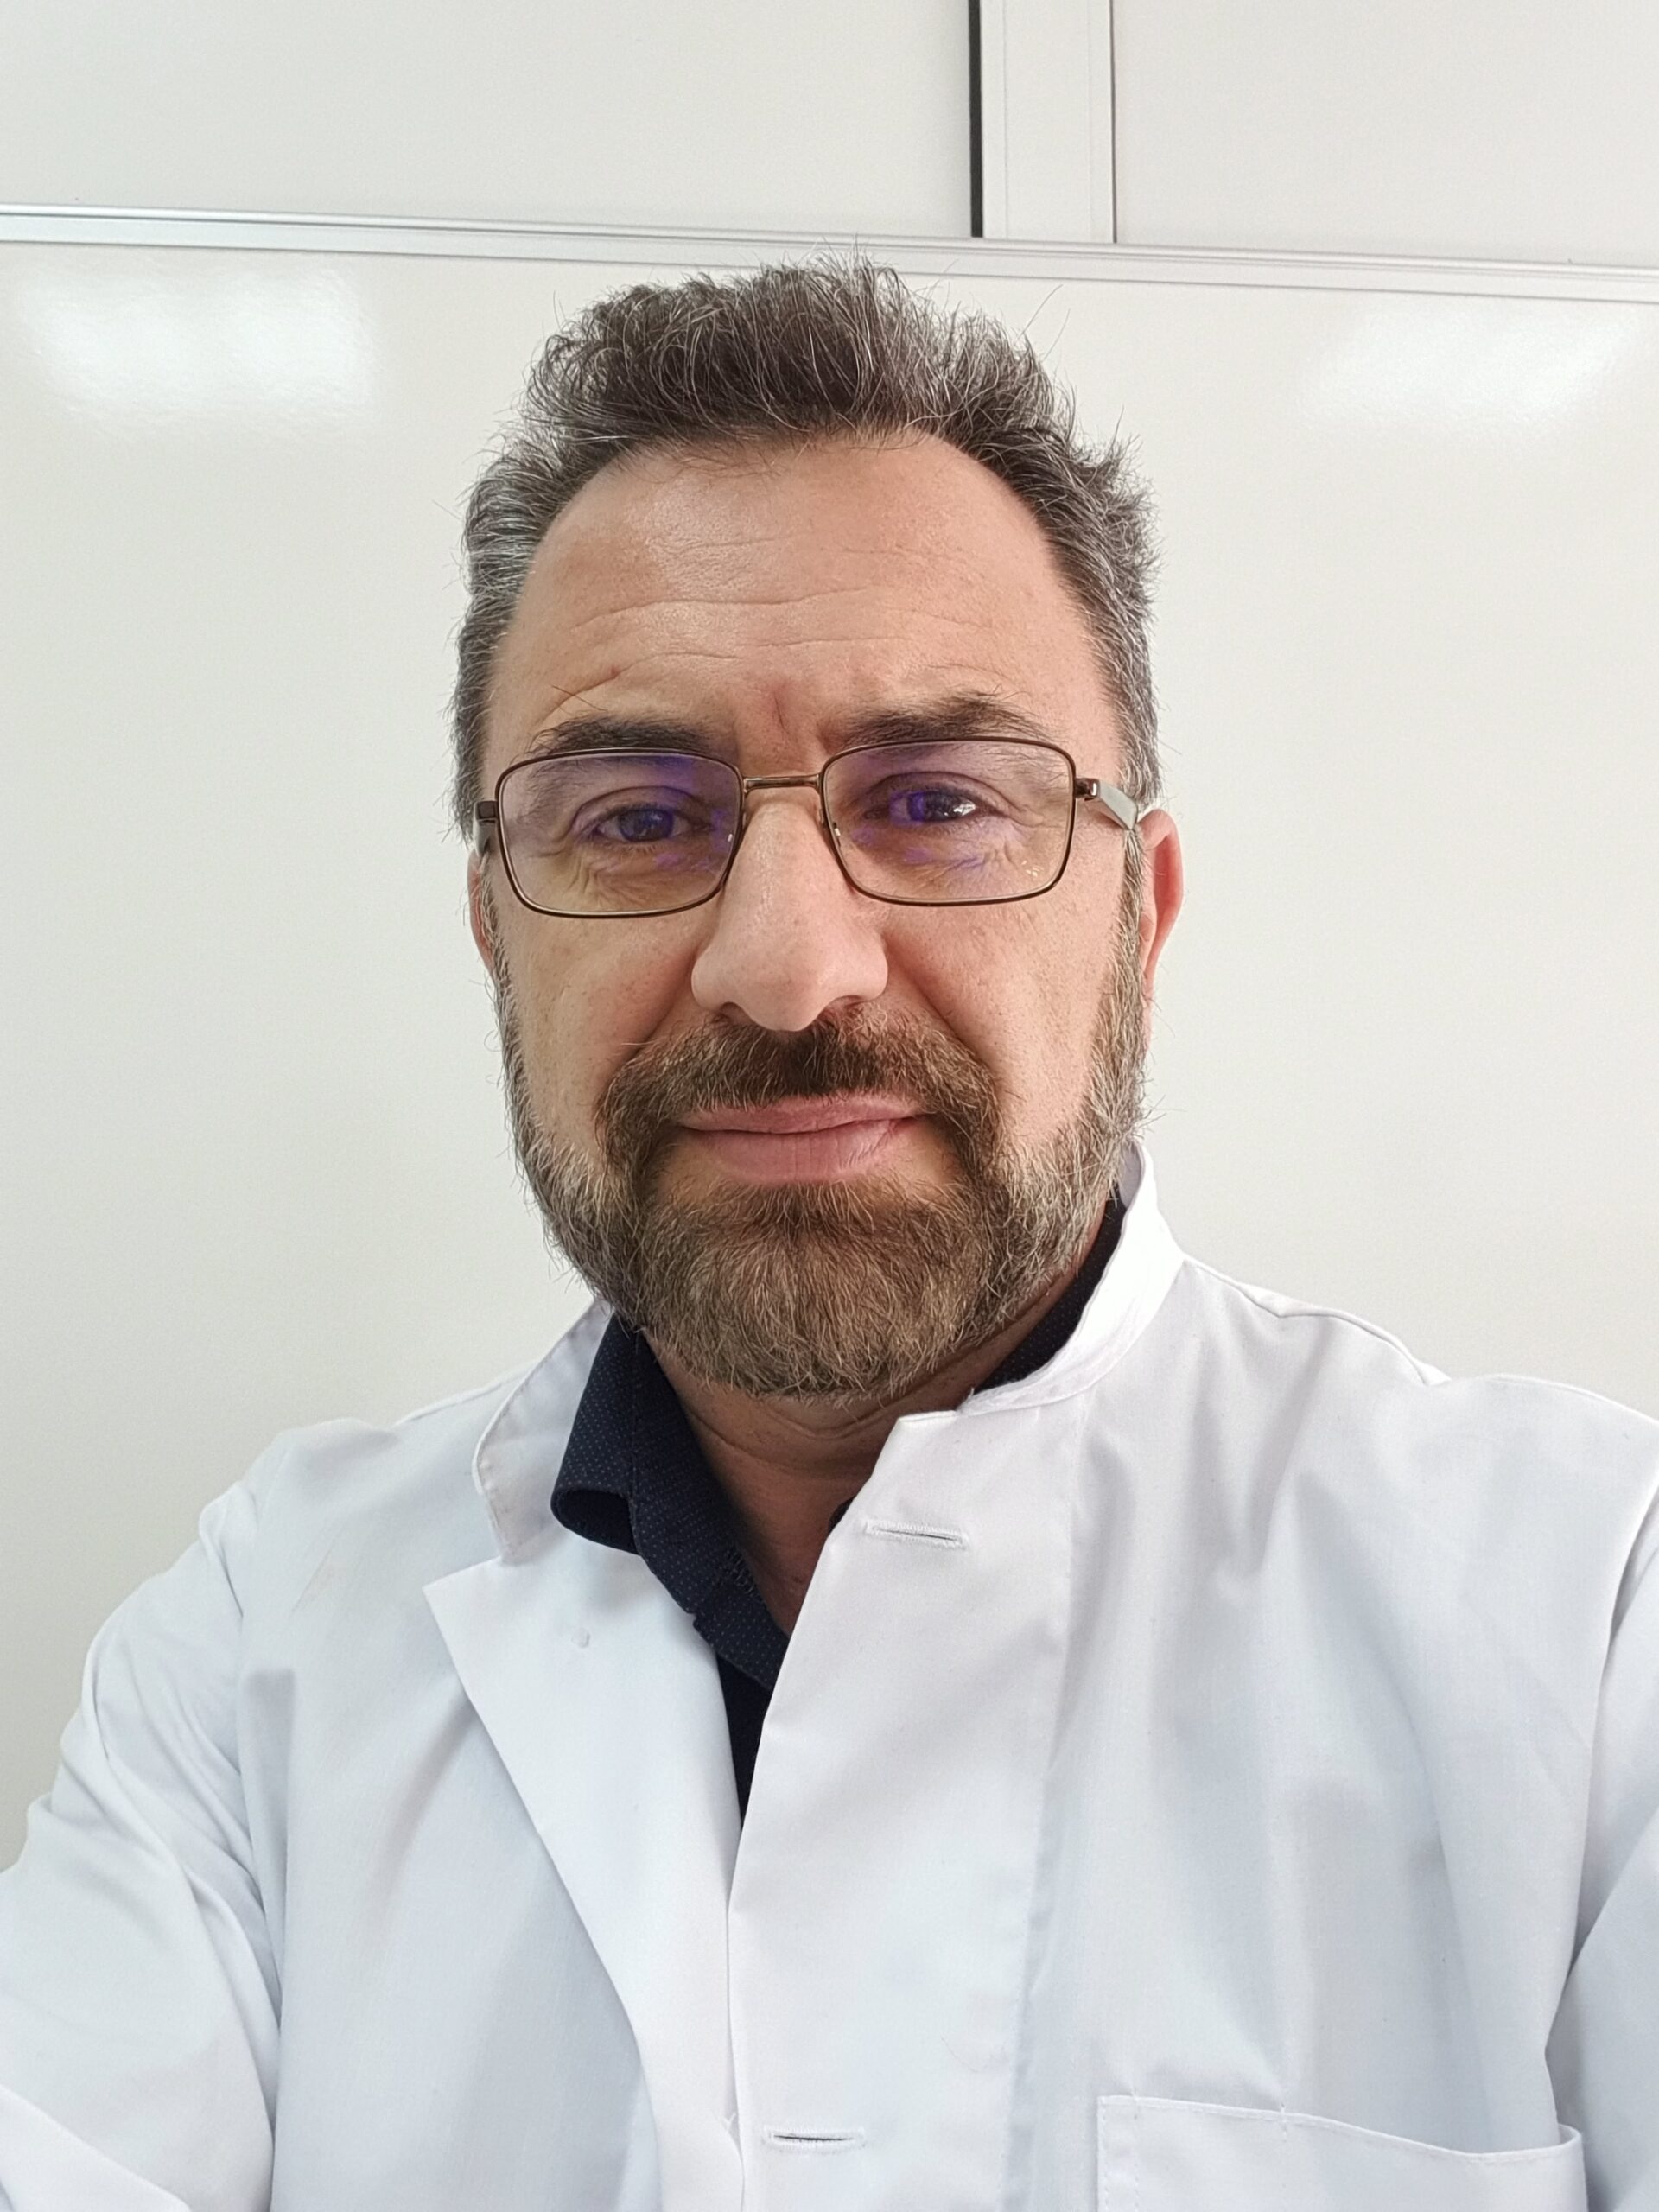 Ο κ. Νικόλαος Σπανάκης, Αναπληρωτής Καθηγητής του Πανεπιστημίου Αθηνών και Υπεύθυνος του Εργαστηρίου Μοριακής Βιολογίας του Ομίλου HHG